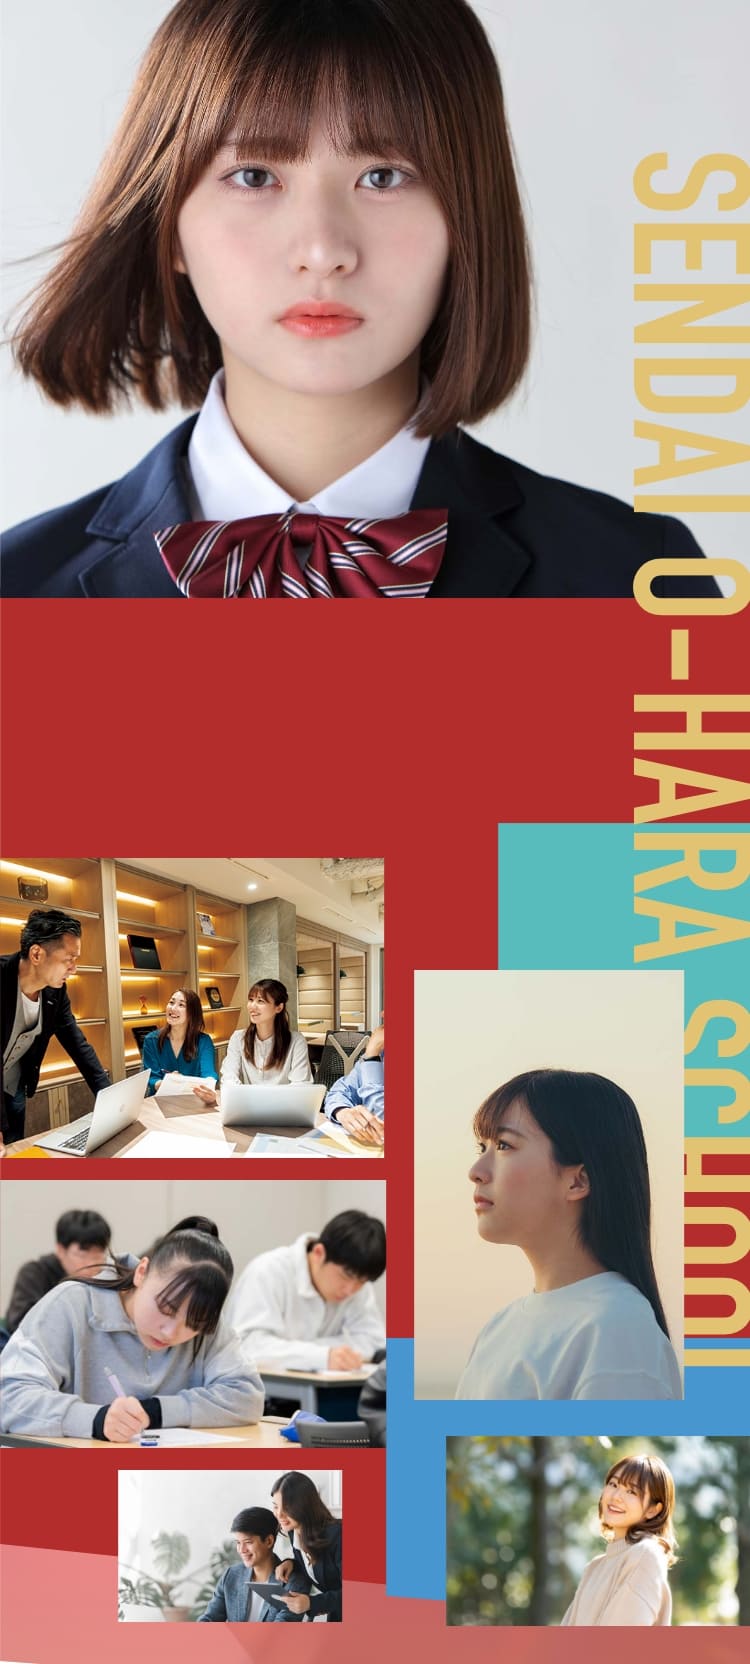 仙台大原簿記情報公務員専門学校 | 公務員合格・資格・就職に強い専門学校